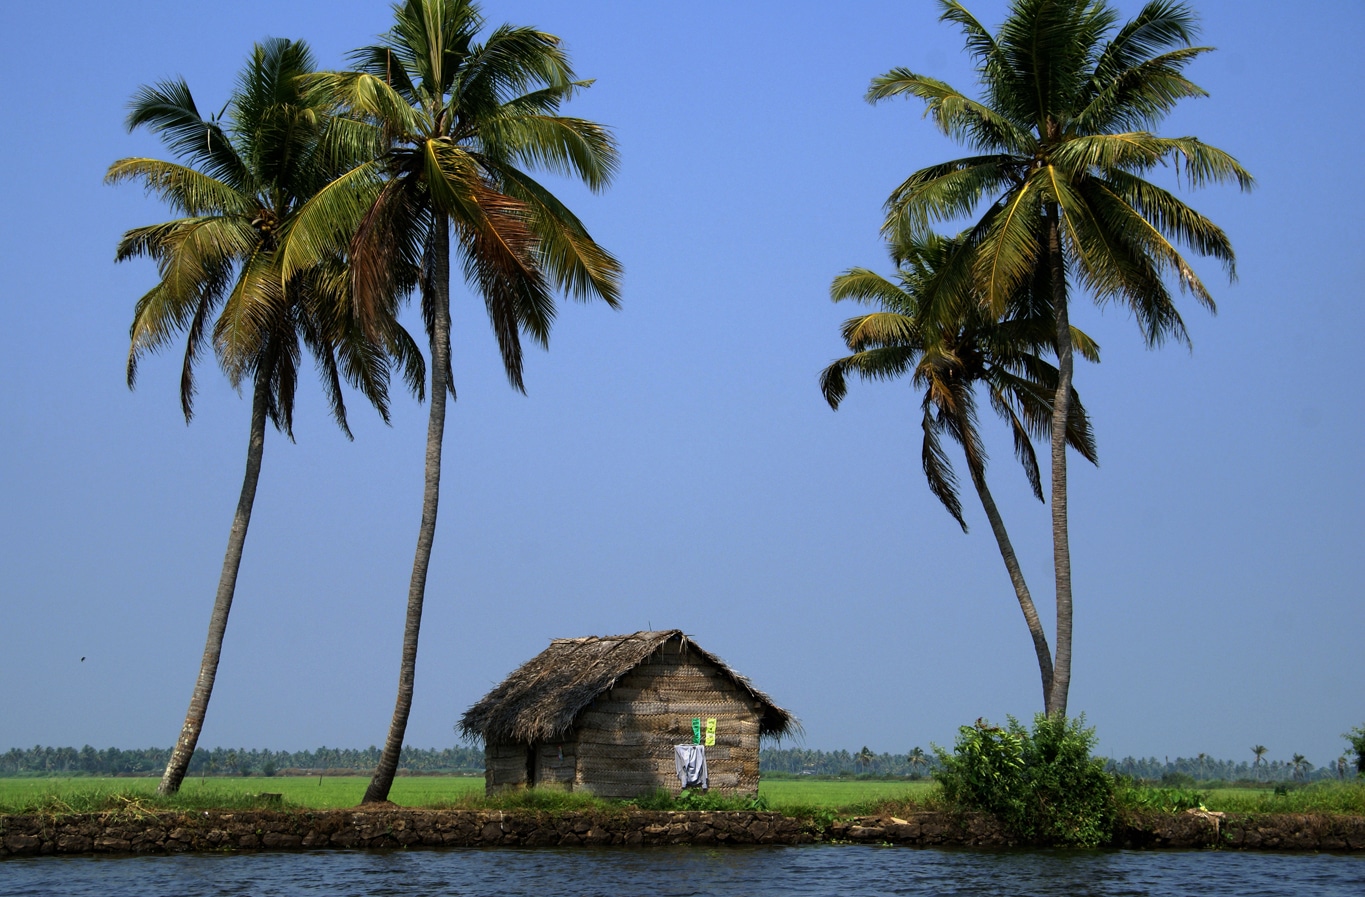 Paysage insolite depuis un public boat sur les backwaters Allepey Lors de mes voyages en Inde